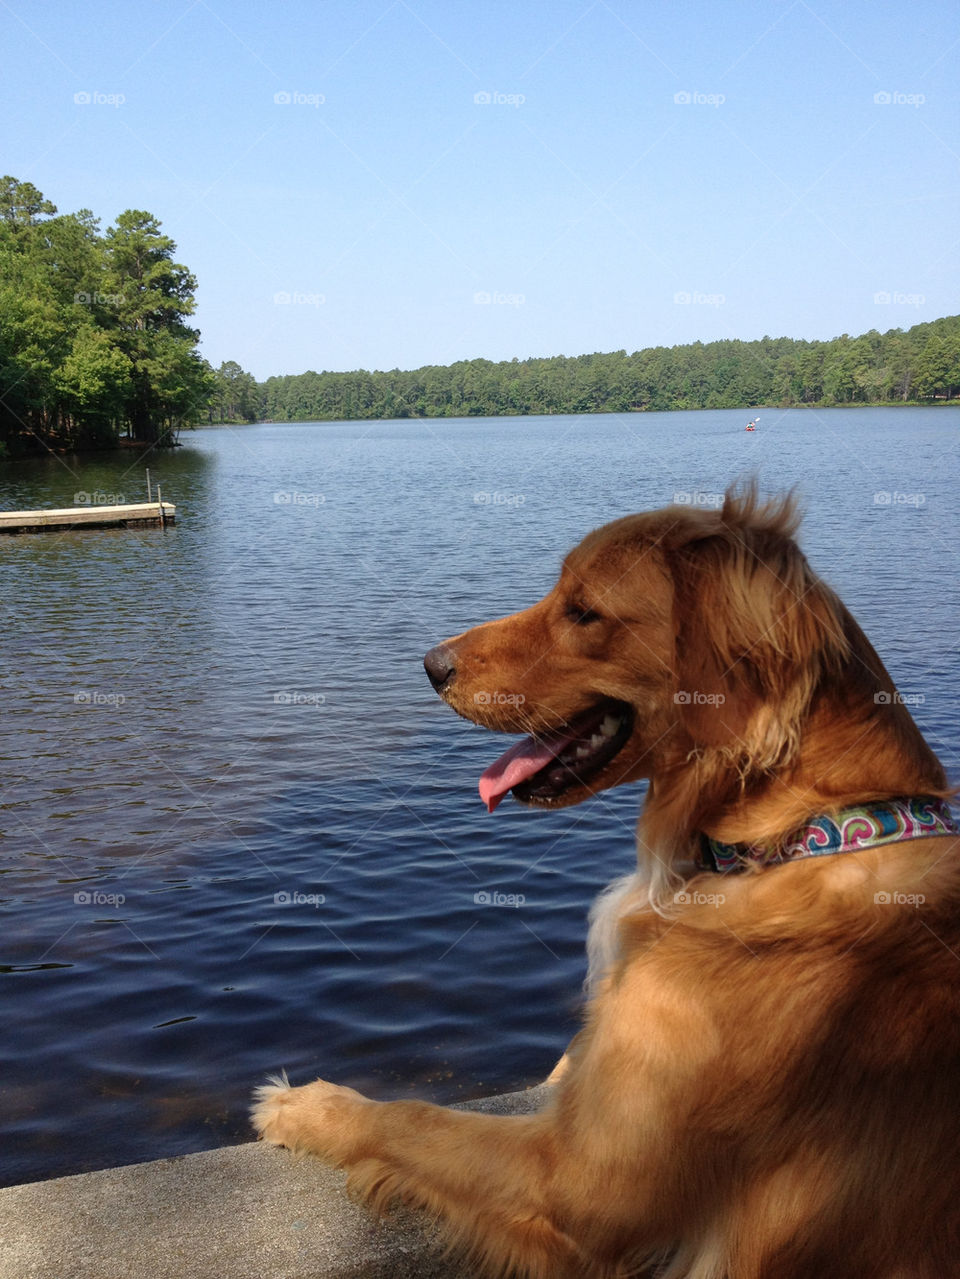 nature summer dog lake by thebigorangedog